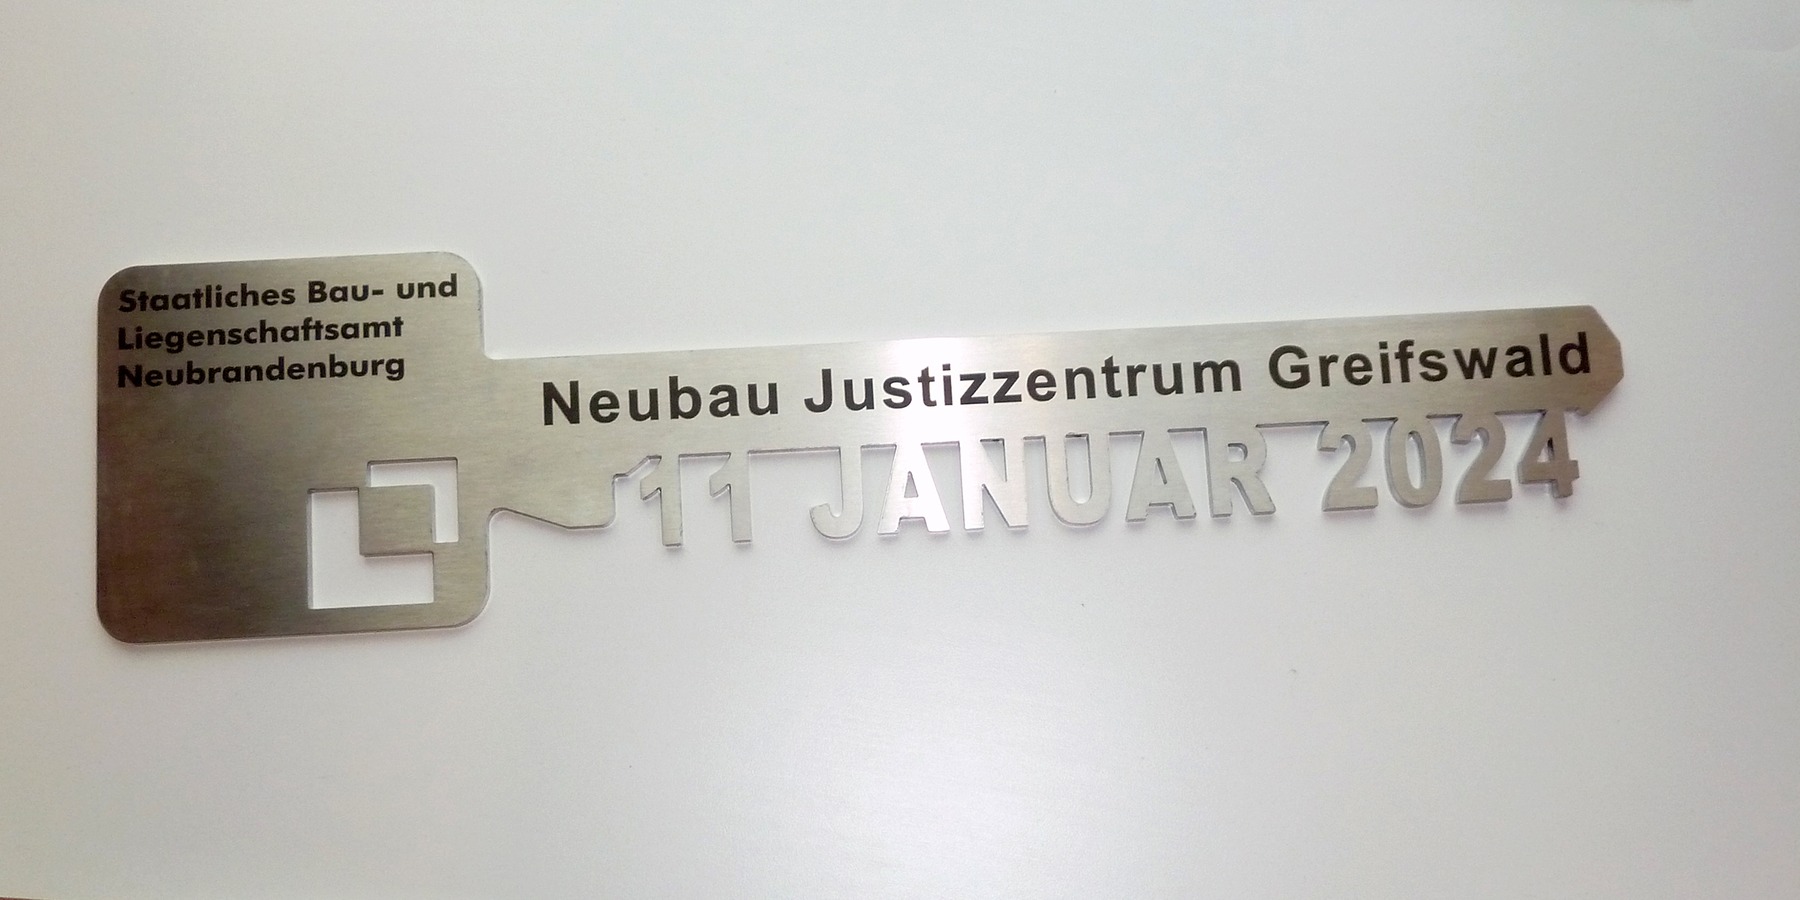 Der Schlüssel zur feierlichen Übergabe des Justizzentrums Greifswald. © 2023 Staaliches Bau und Liegenschaftsamt Neubrandenburg